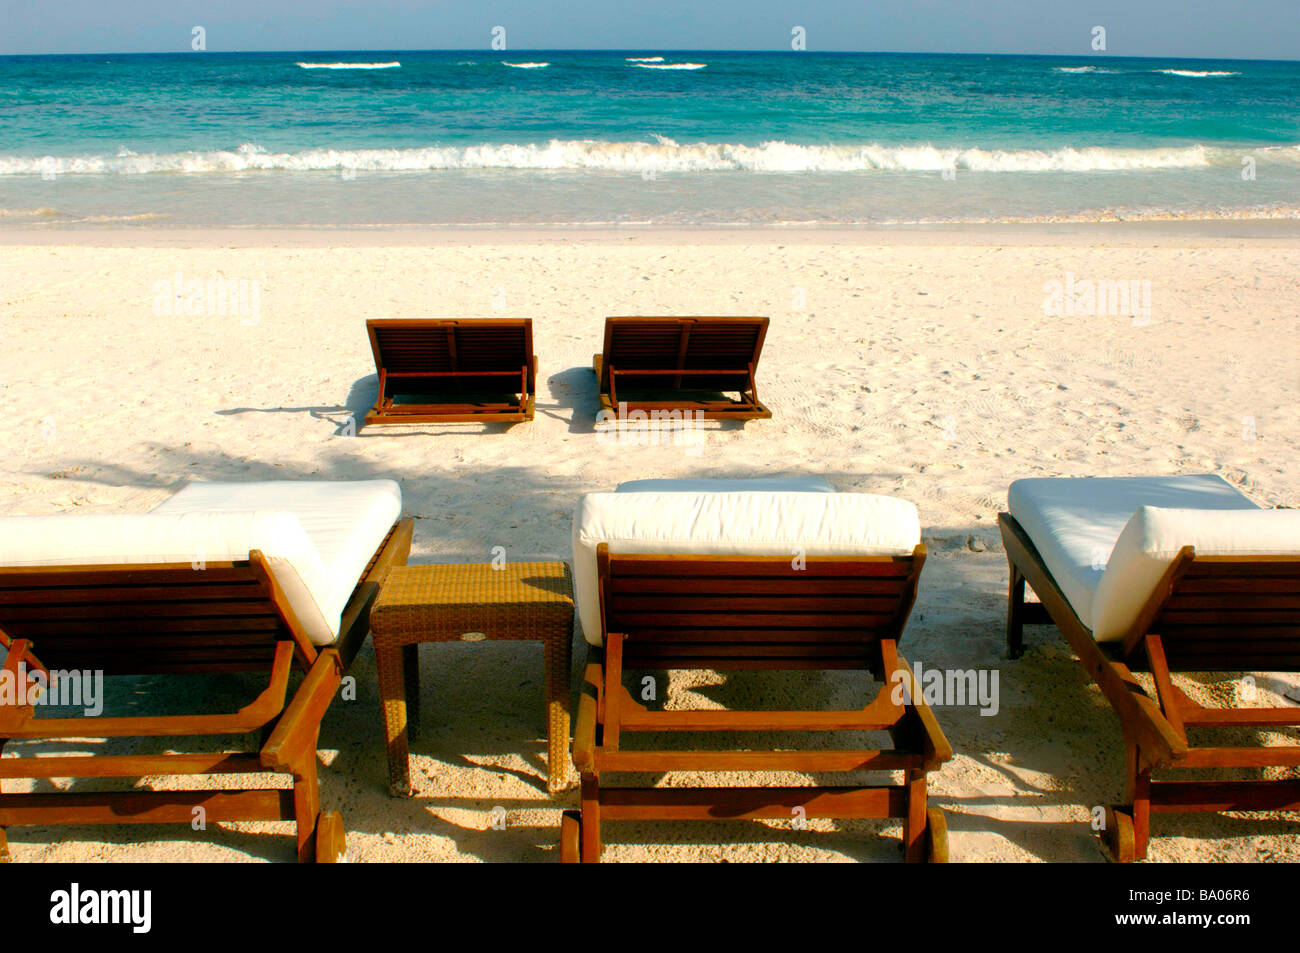 Liegestühle und Schirme an einem tropischen Strand mit schönen weißen Sand, blaues Wasser und brechenden Wellen. Stockfoto